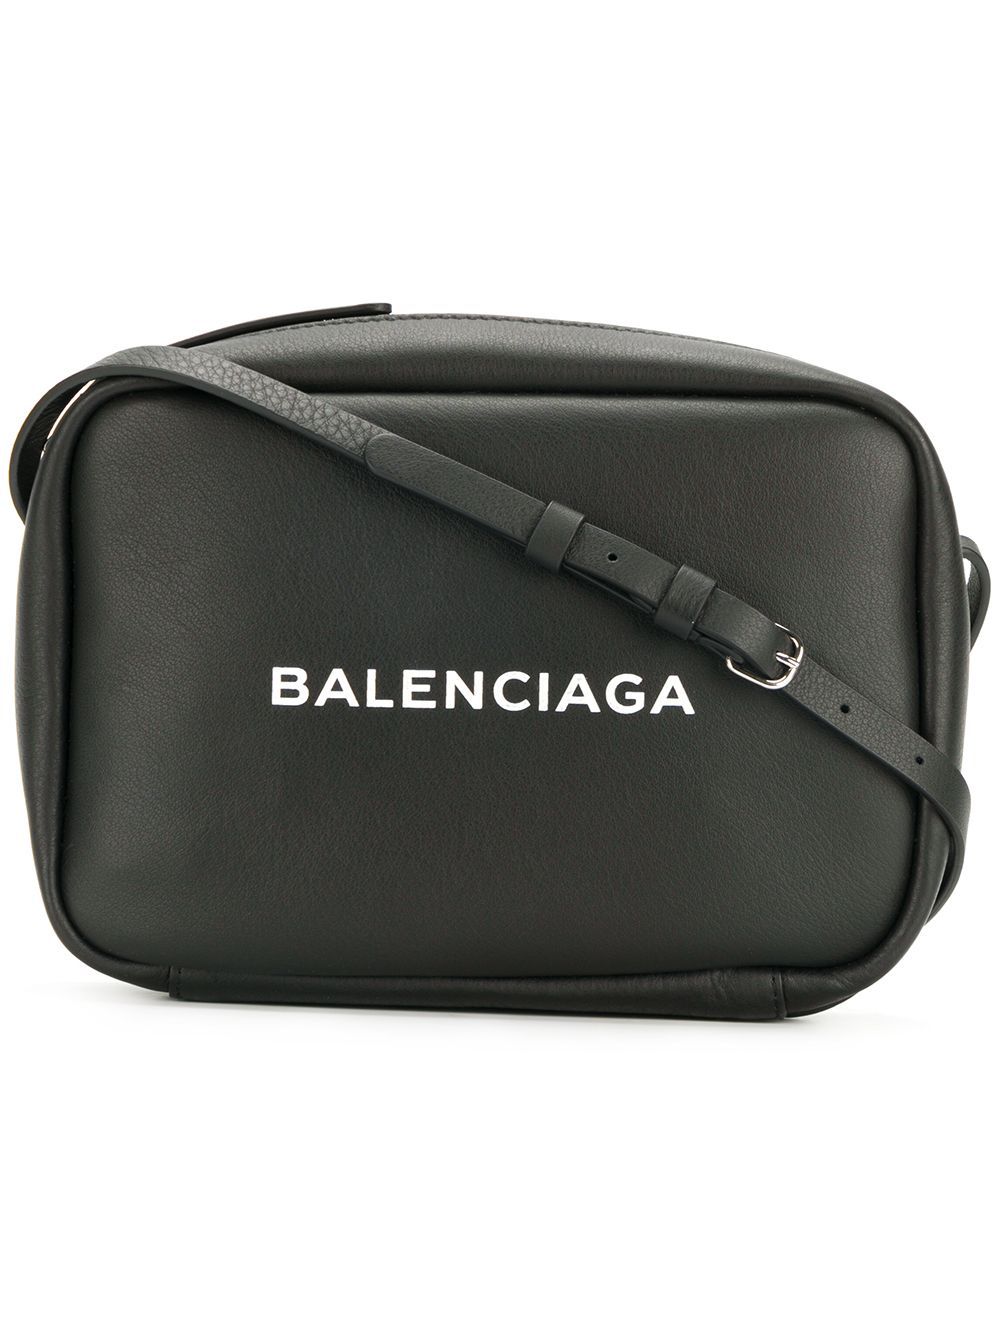 Balenciaga black Everyday Camera leather bag | FarFetch Global